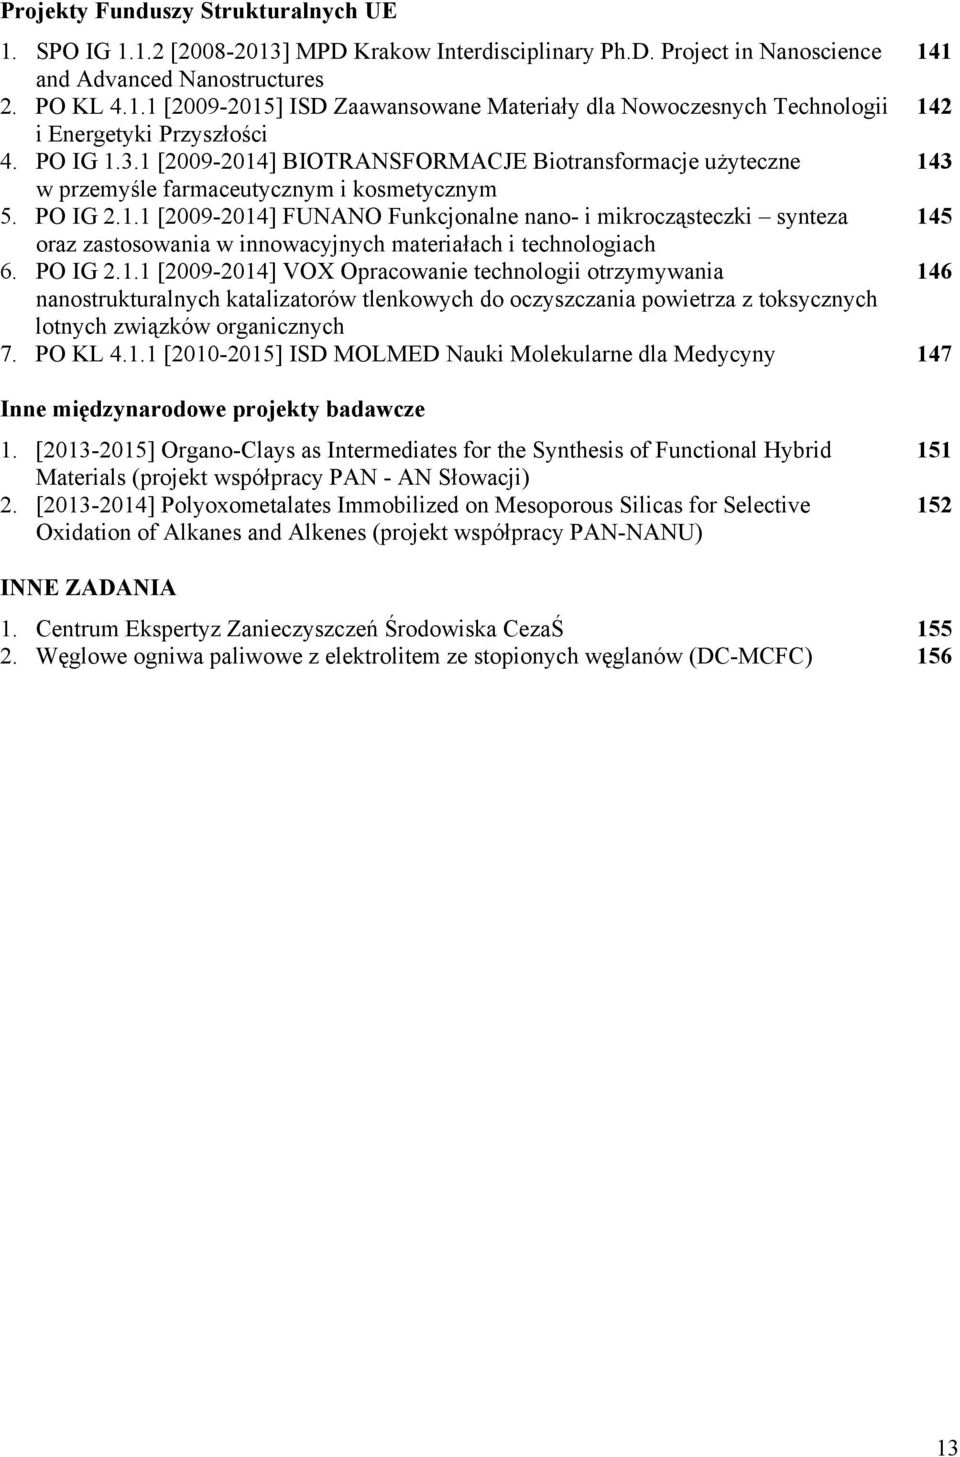 PO IG 2.1.1 [2009-2014] VOX Opracowanie technologii otrzymywania 146 nanostrukturalnych katalizatorów tlenkowych do oczyszczania powietrza z toksycznych lotnych związków organicznych 7. PO KL 4.1.1 [2010-2015] ISD MOLMED Nauki Molekularne dla Medycyny 147 Inne międzynarodowe projekty badawcze 1.